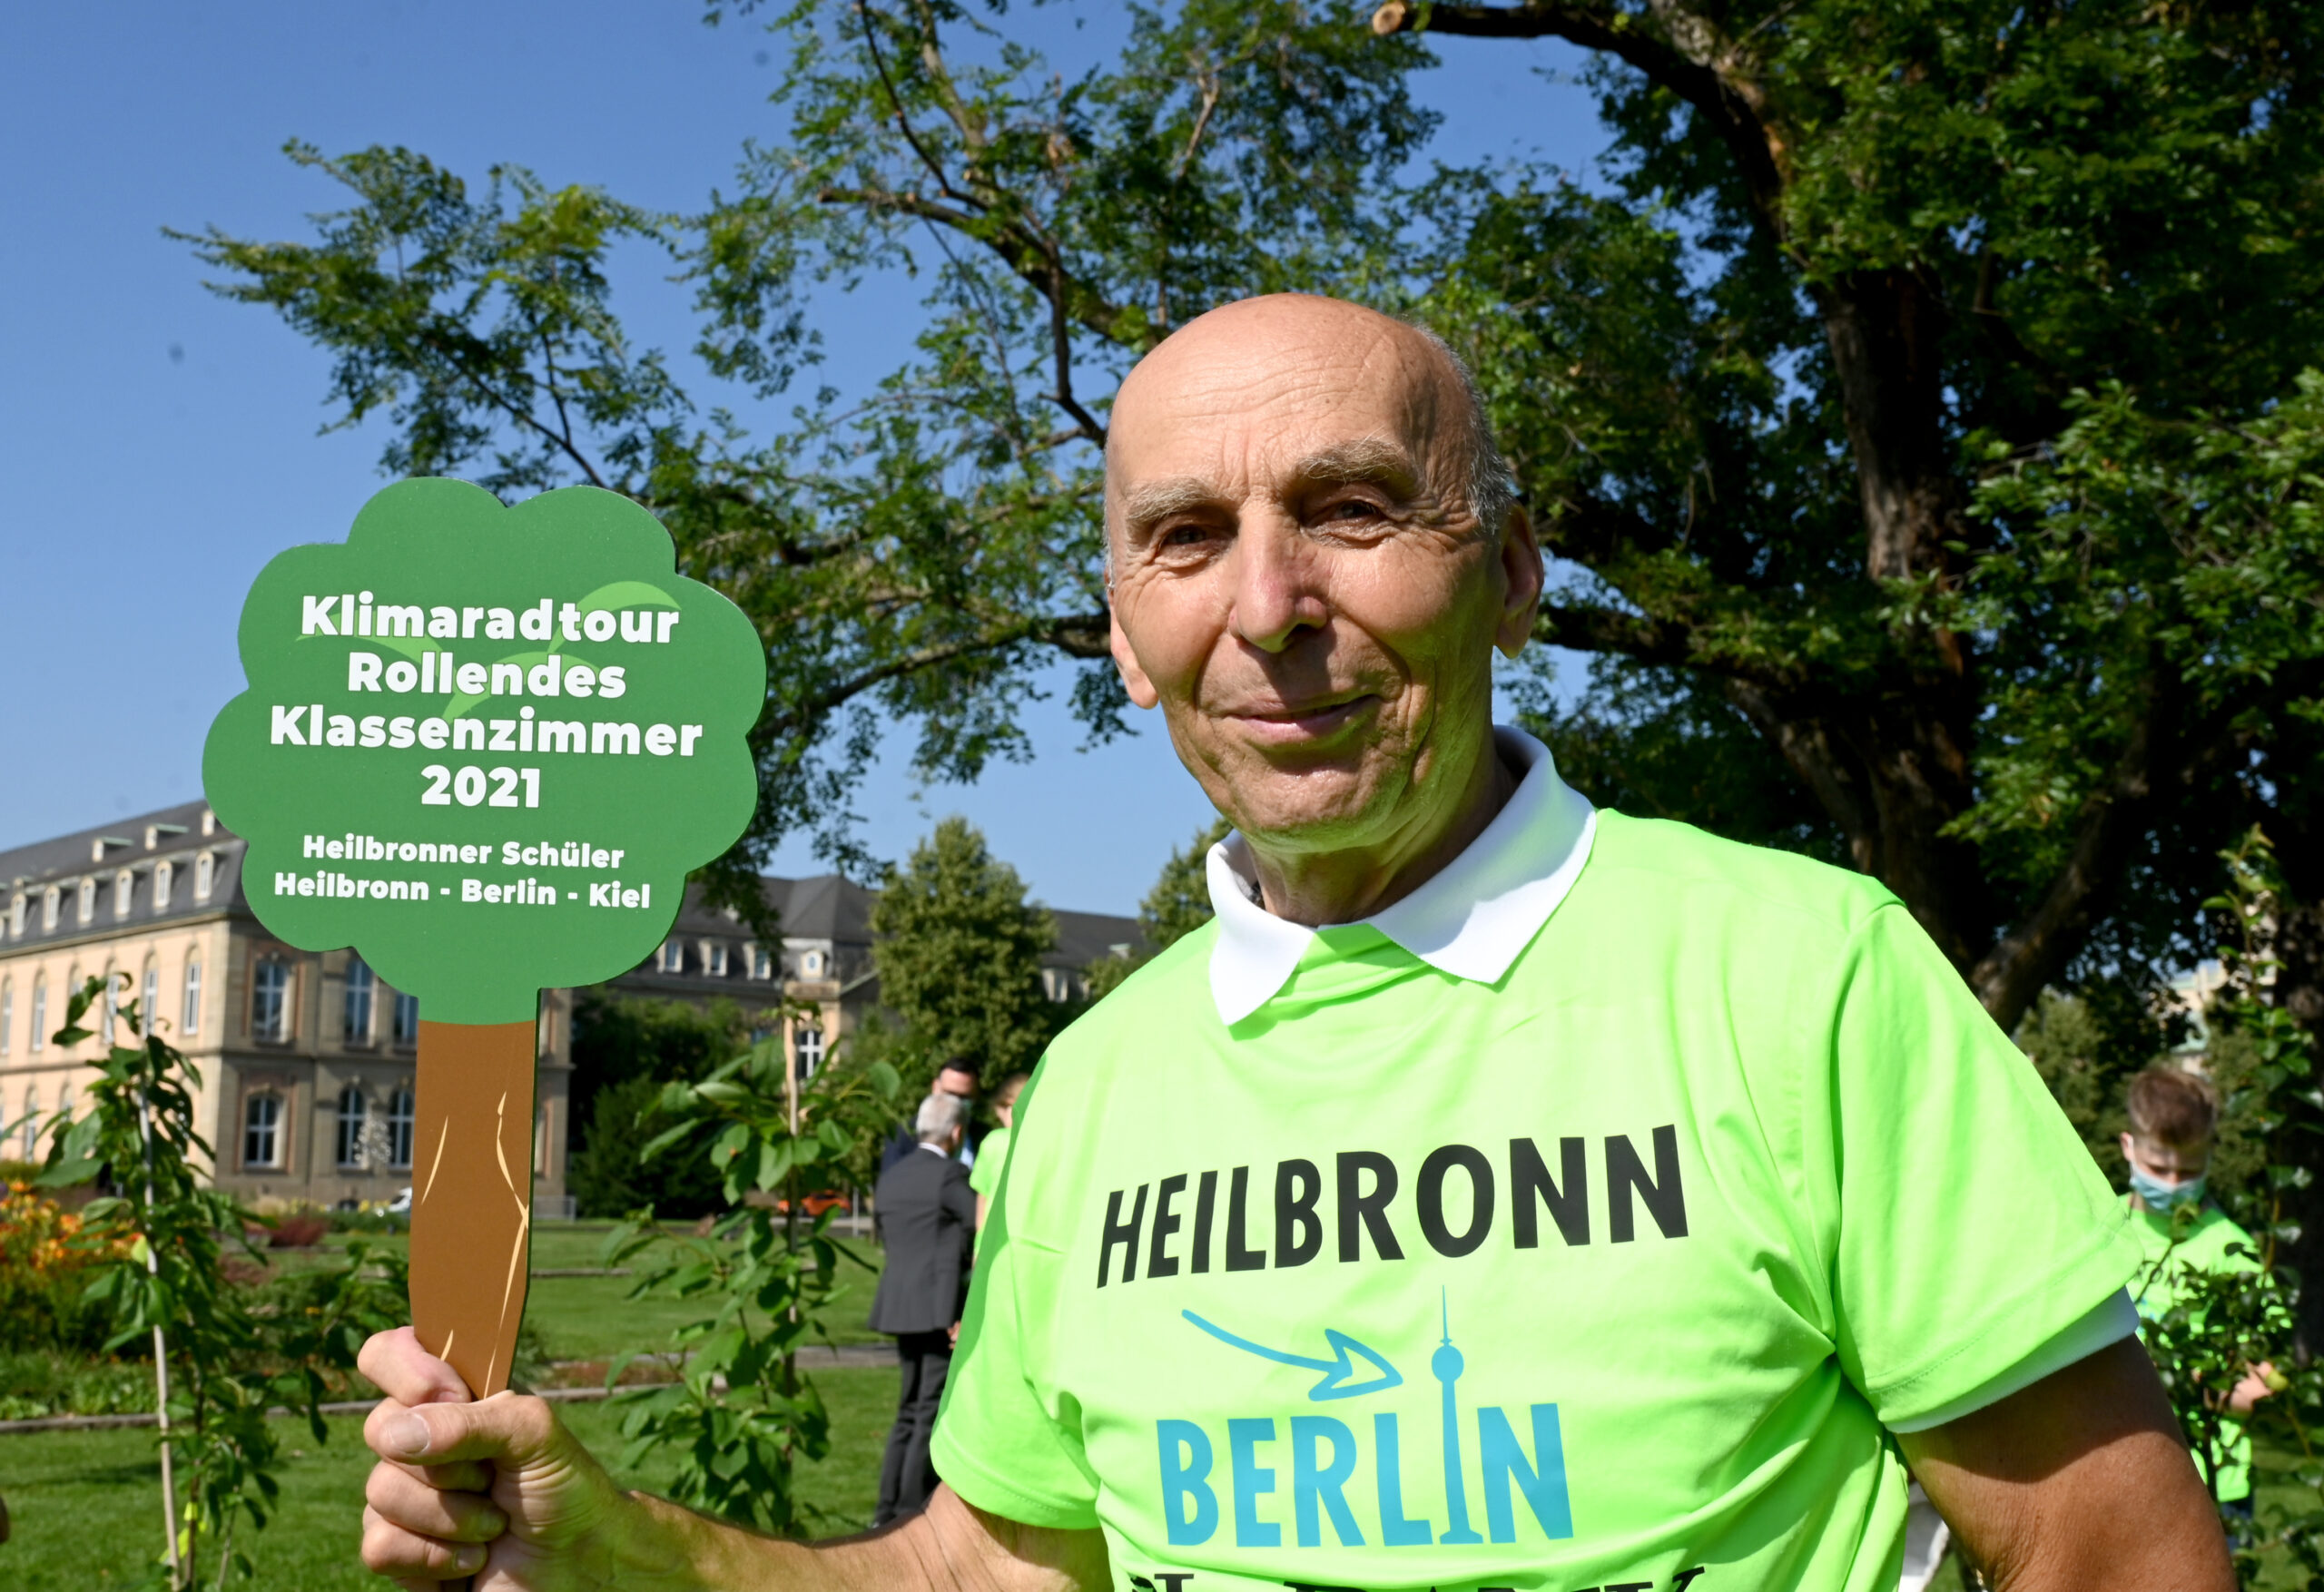 Der Radfahrer und Initiator des Aktion «rollendes Klassenzimmer», Ortwin Czarnowski, steht bei einem Pressetermin mit dem Logo der Klimaschutzaktion vor dem Stuttgarter Landtag.